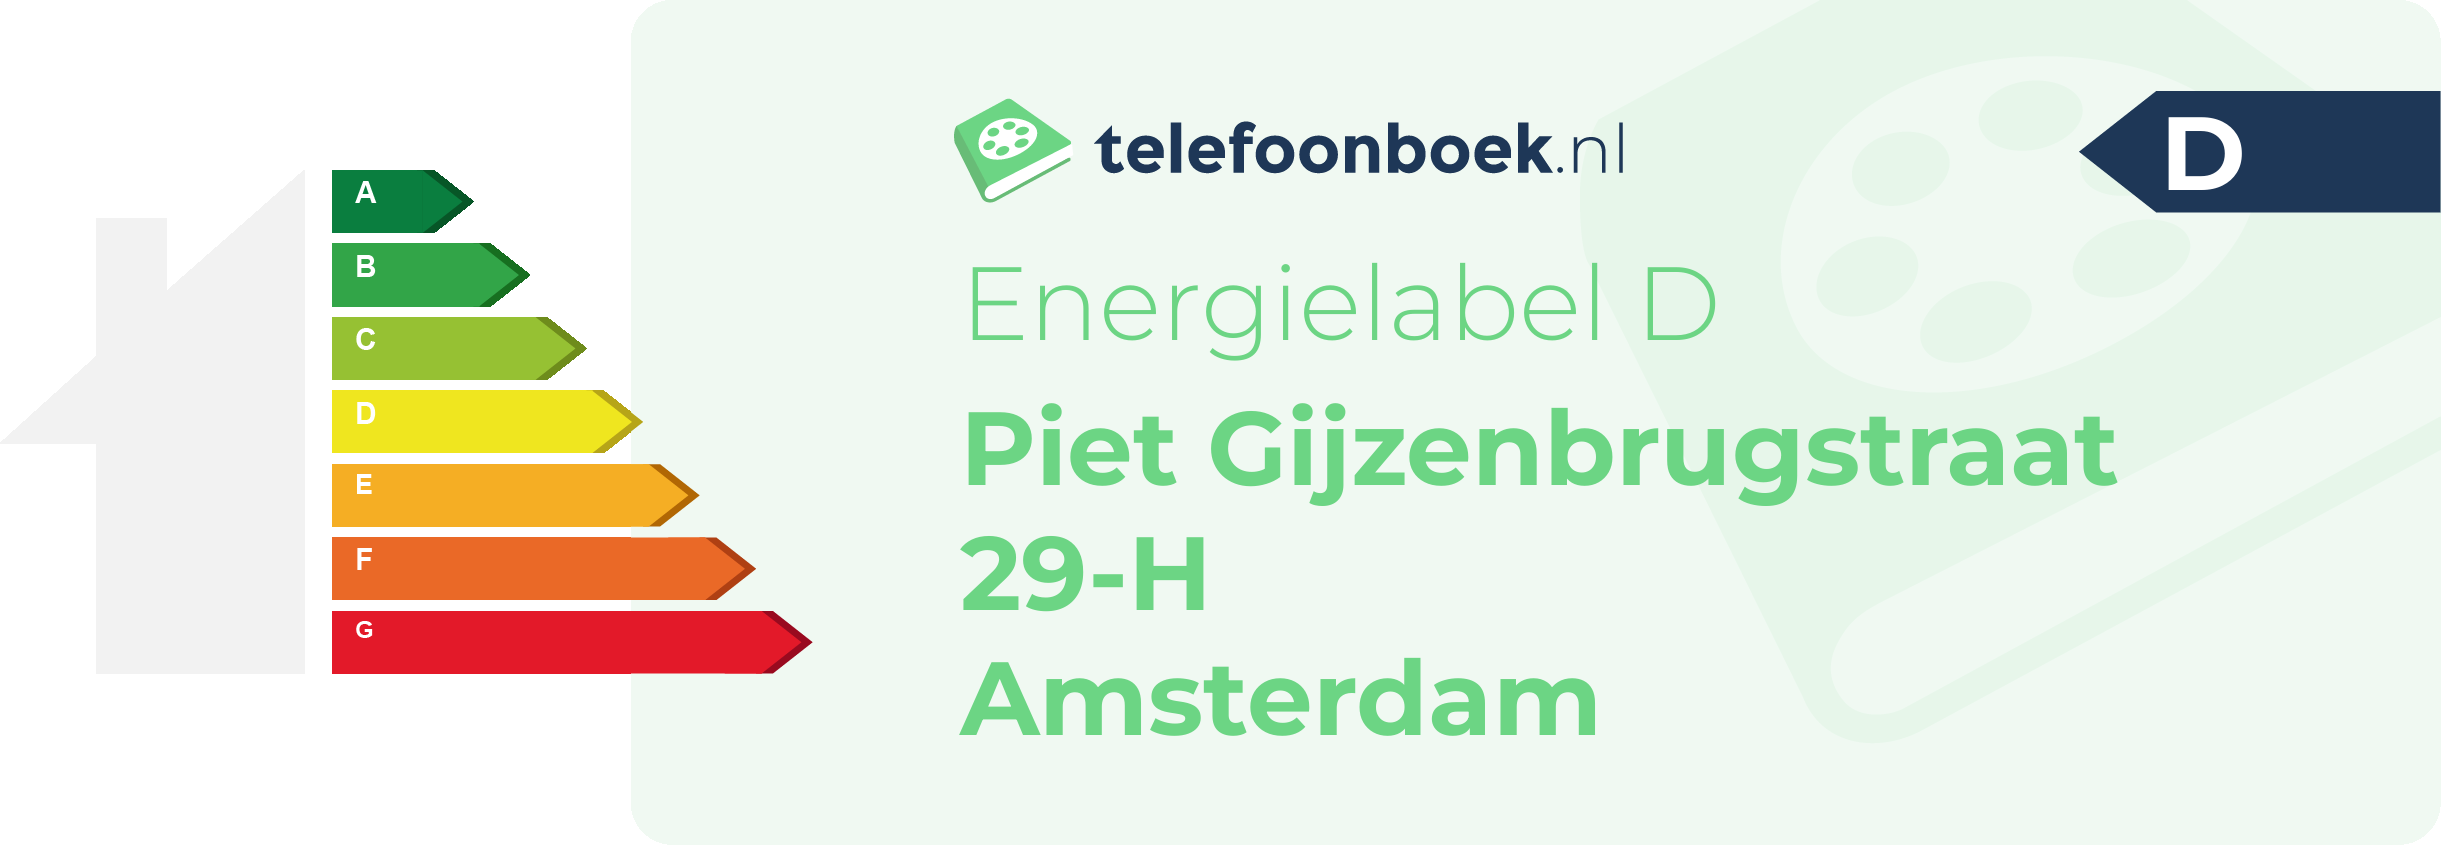 Energielabel Piet Gijzenbrugstraat 29-H Amsterdam